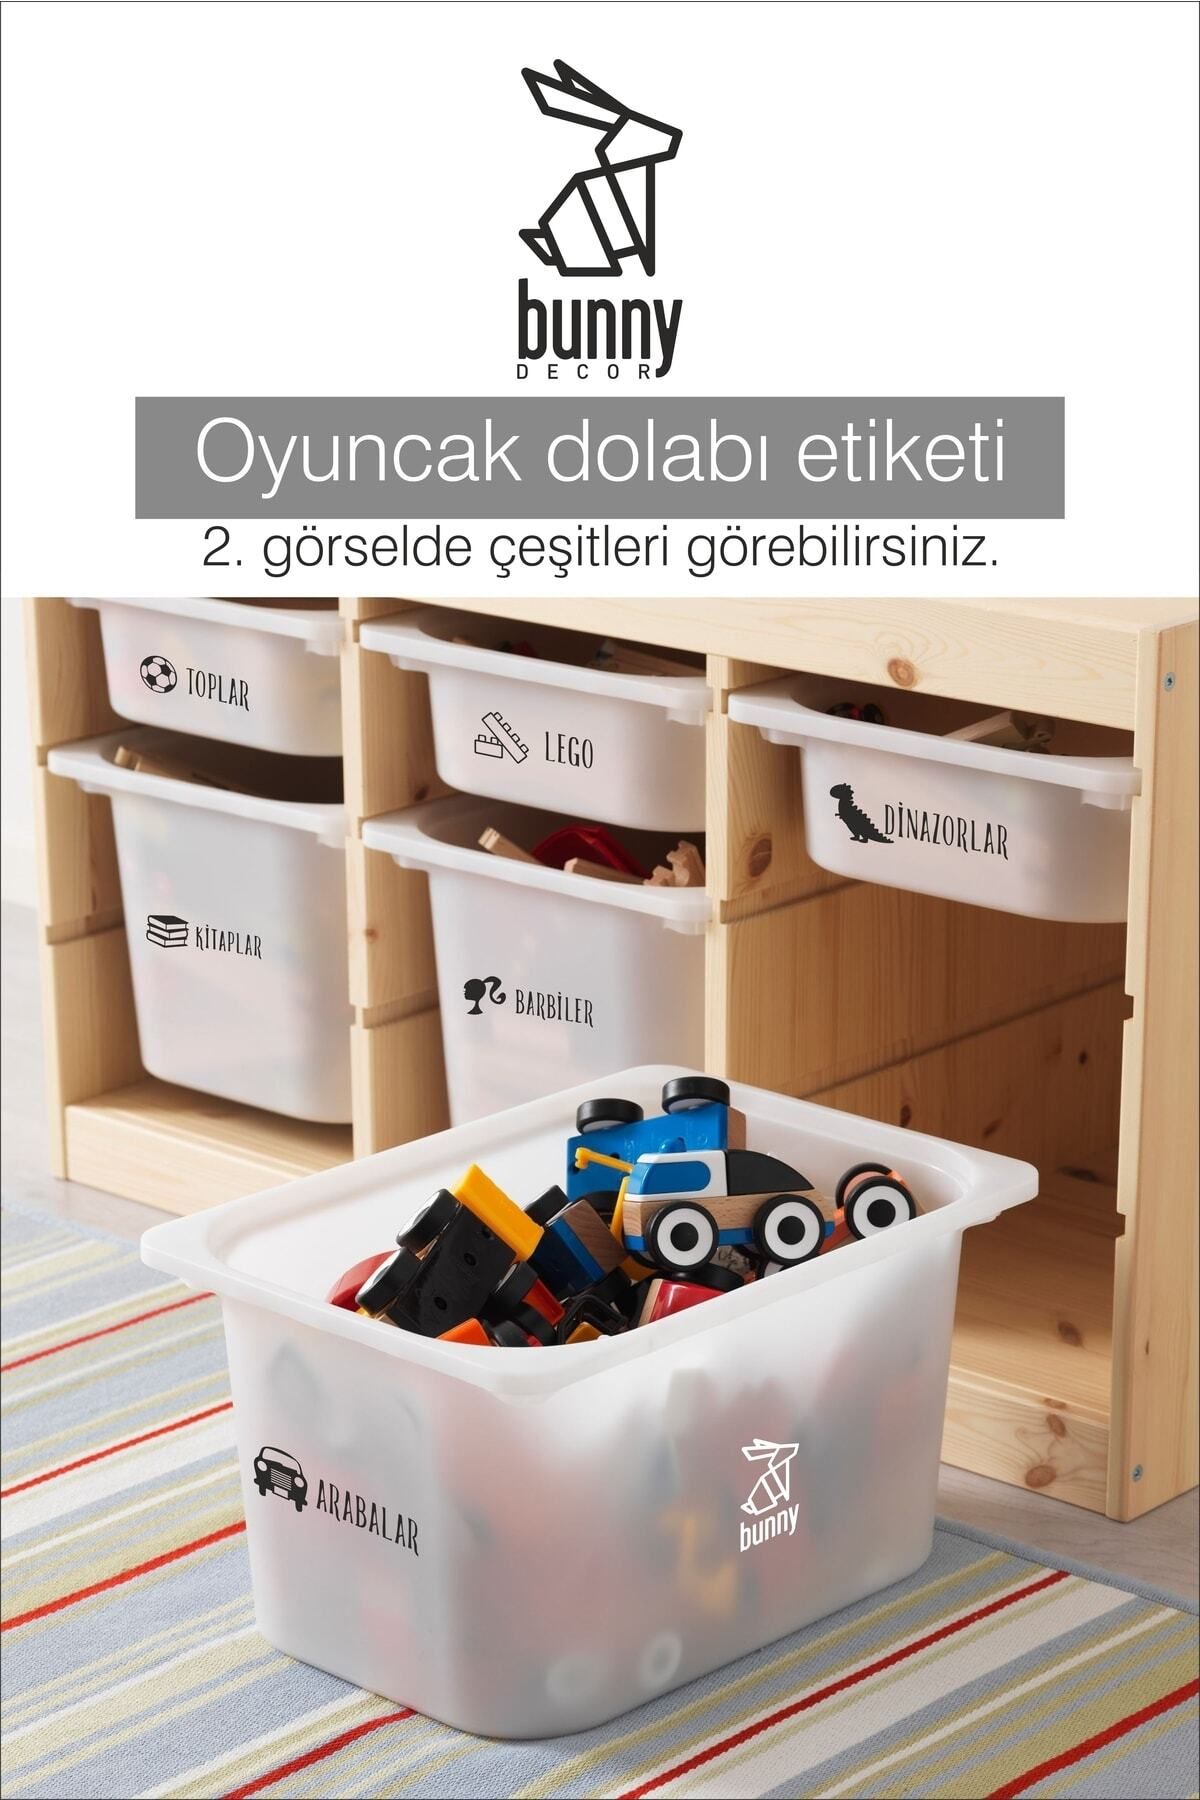 Bunny Decor Oyuncak Dolabı Kategori Etiketi Türkçe, Organizer Etiketi Türkçe Şeffaf Etiket